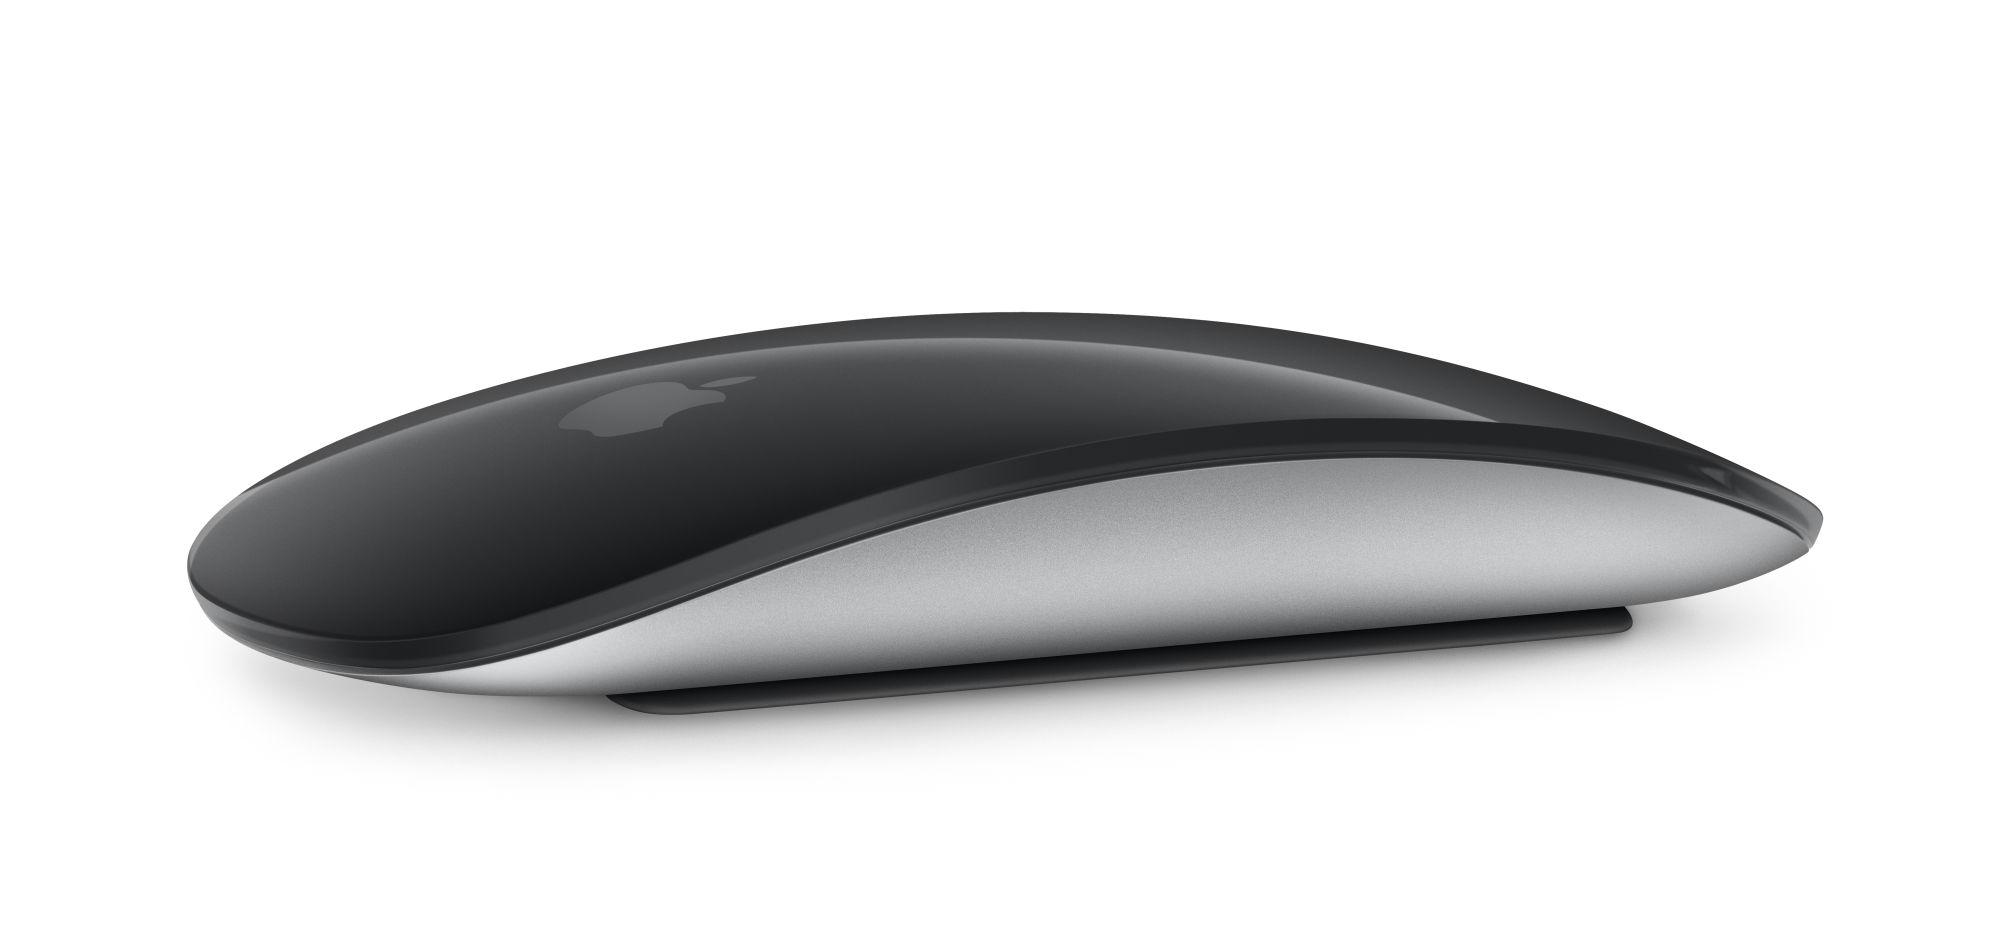 Apple latterliggjøres for nye Magic Mouse